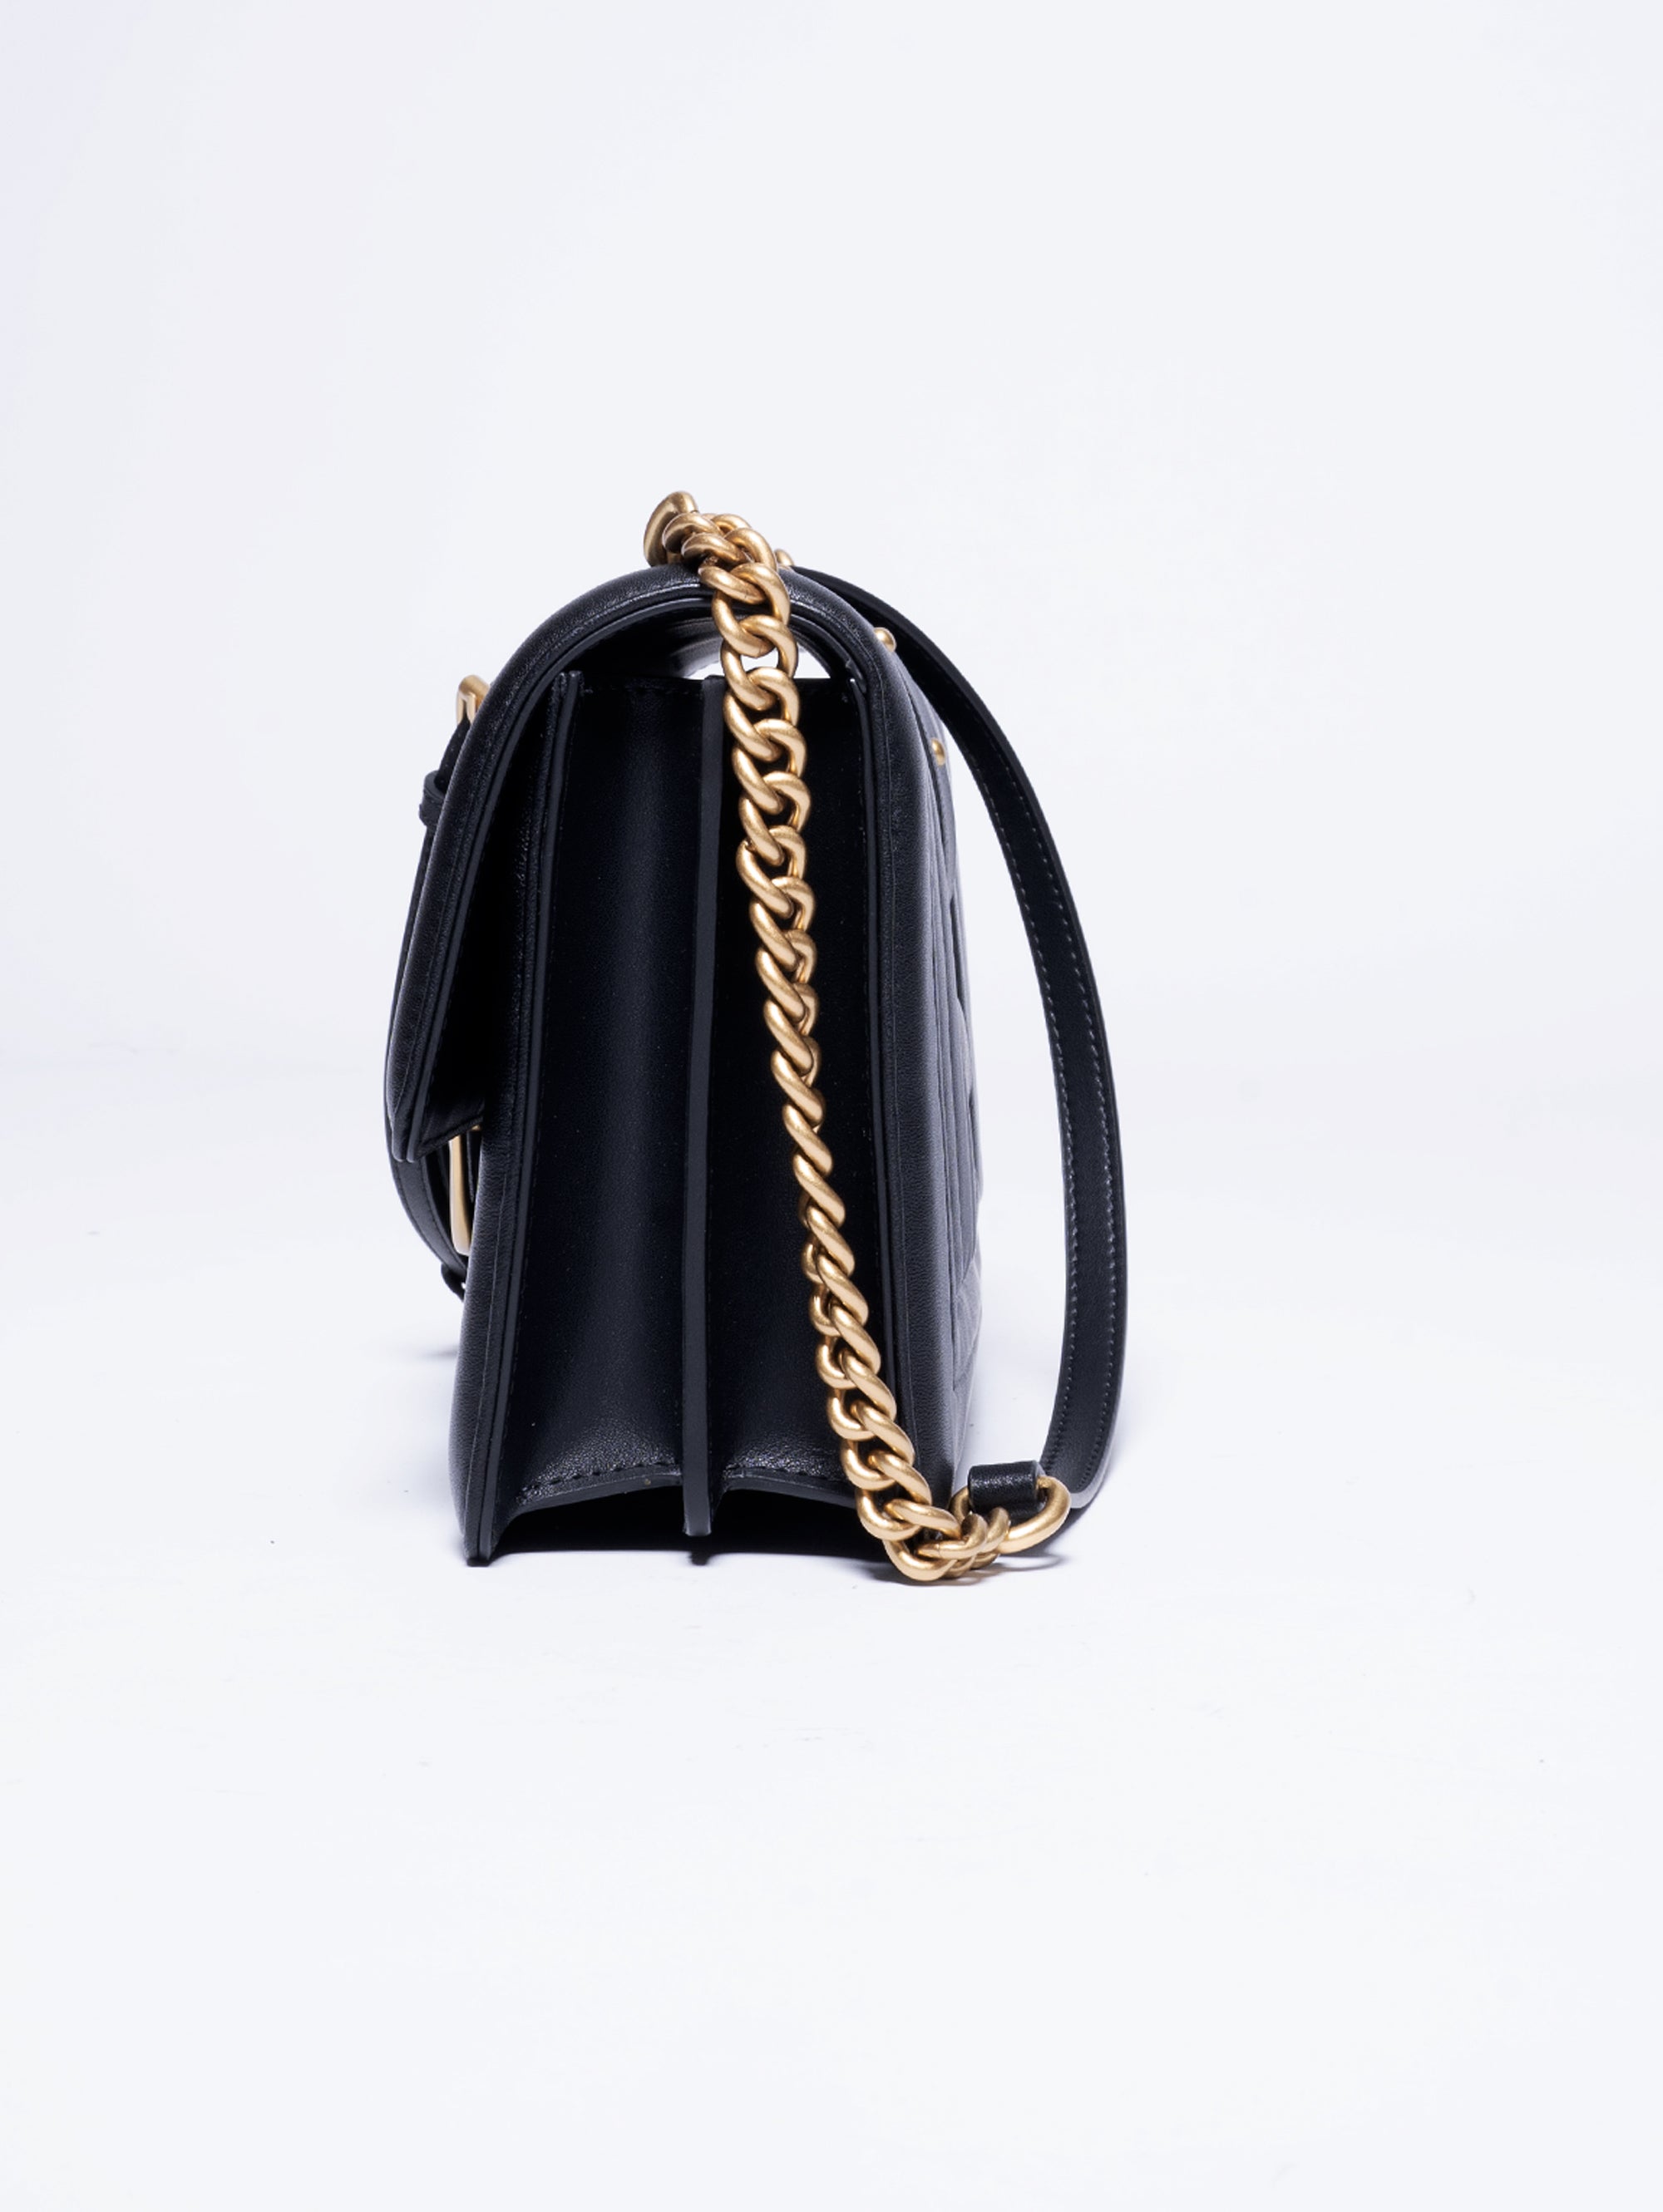 Tasche mit schwarzen Bombè-Details